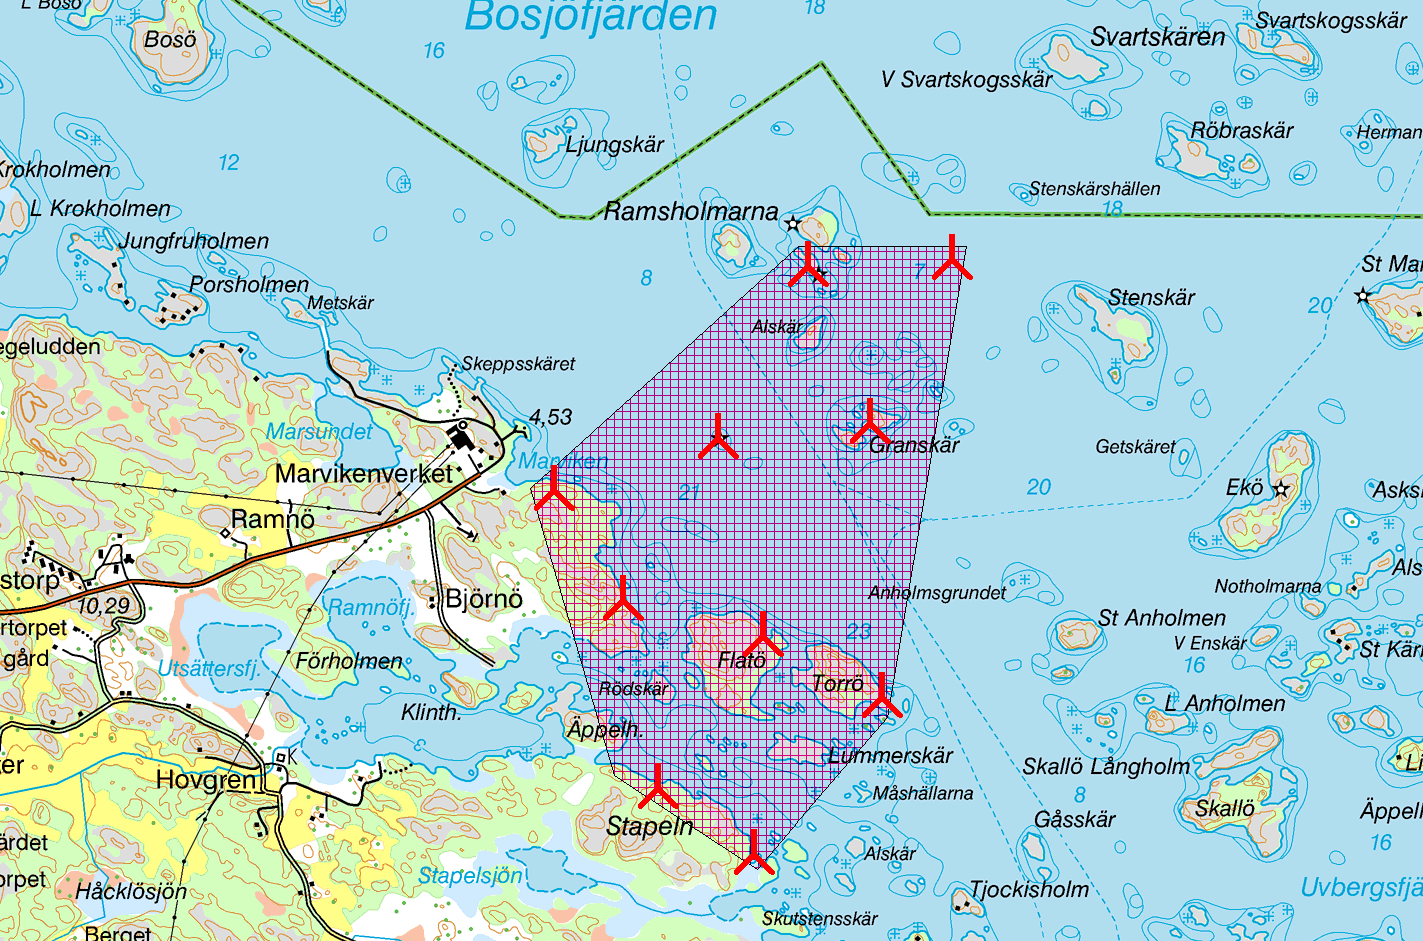 Projektets lokalisering och utformning Vindpark Marvikens öar har avgränsat ett projektområde och börjat skissa på ett par olika alternativ när det gäller projektets lokalisering och utformning inom